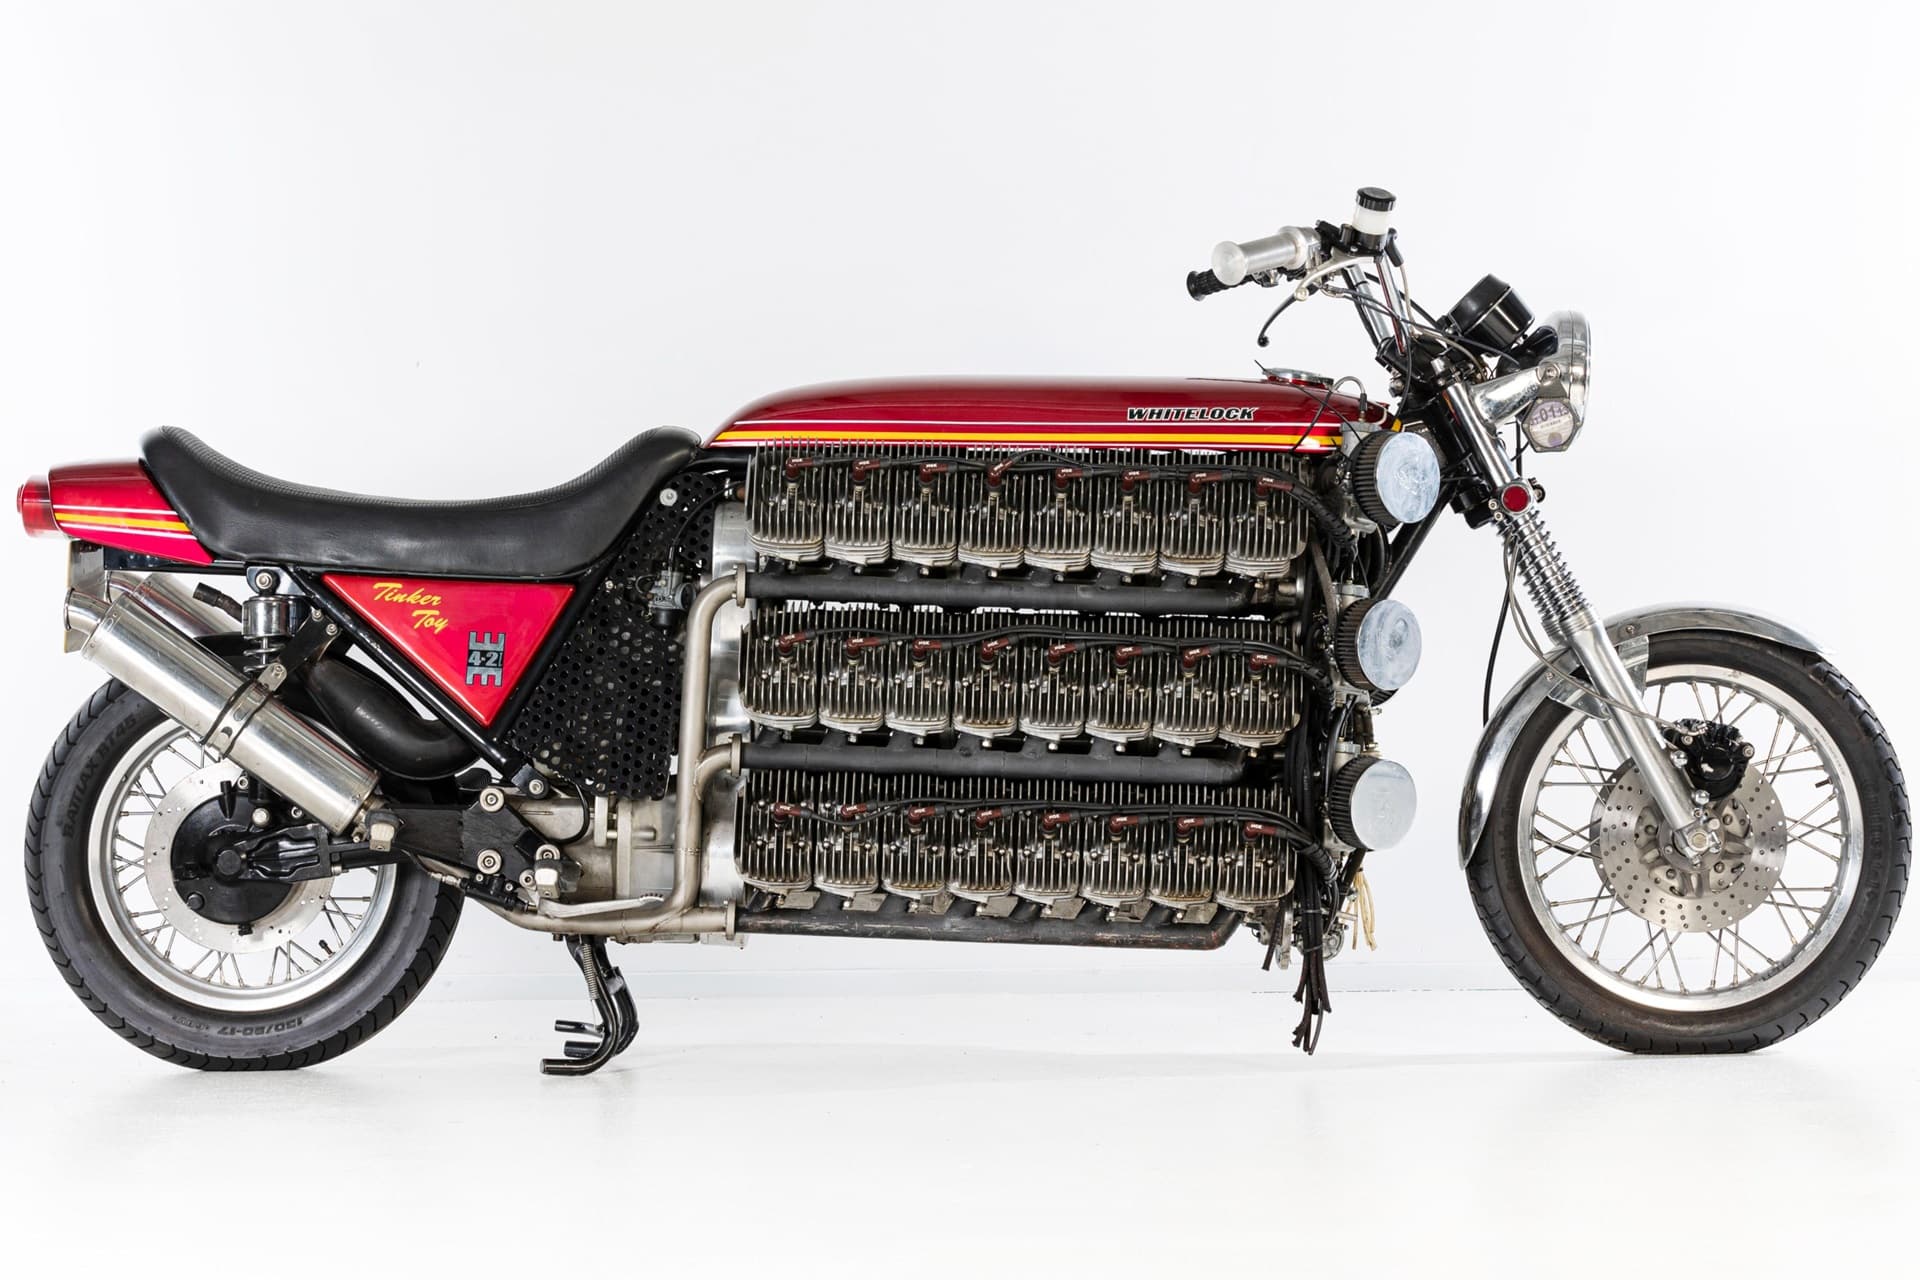 Subastada la Kawasaki de dos tiempos con 48 cilindros por un precio final de más de 100.000 euros